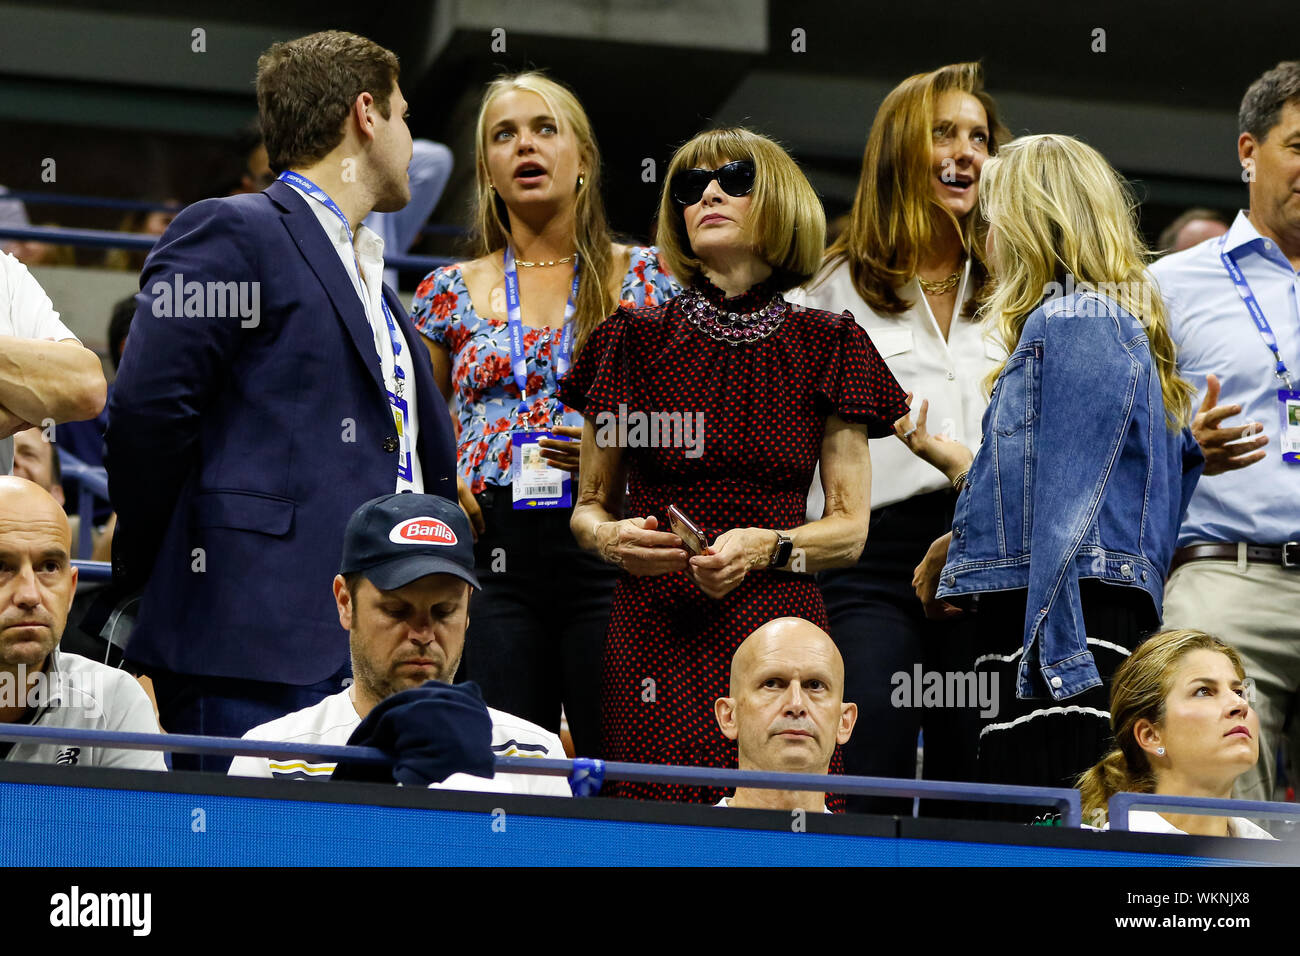 New York, USA. 06Th Sep 2019. Anna Wintour, assiste au match quart masculin  entre Roger Federer de la Suisse et de Grigor Dimitrov de la Bulgarie au  jour 9 de l'US Open